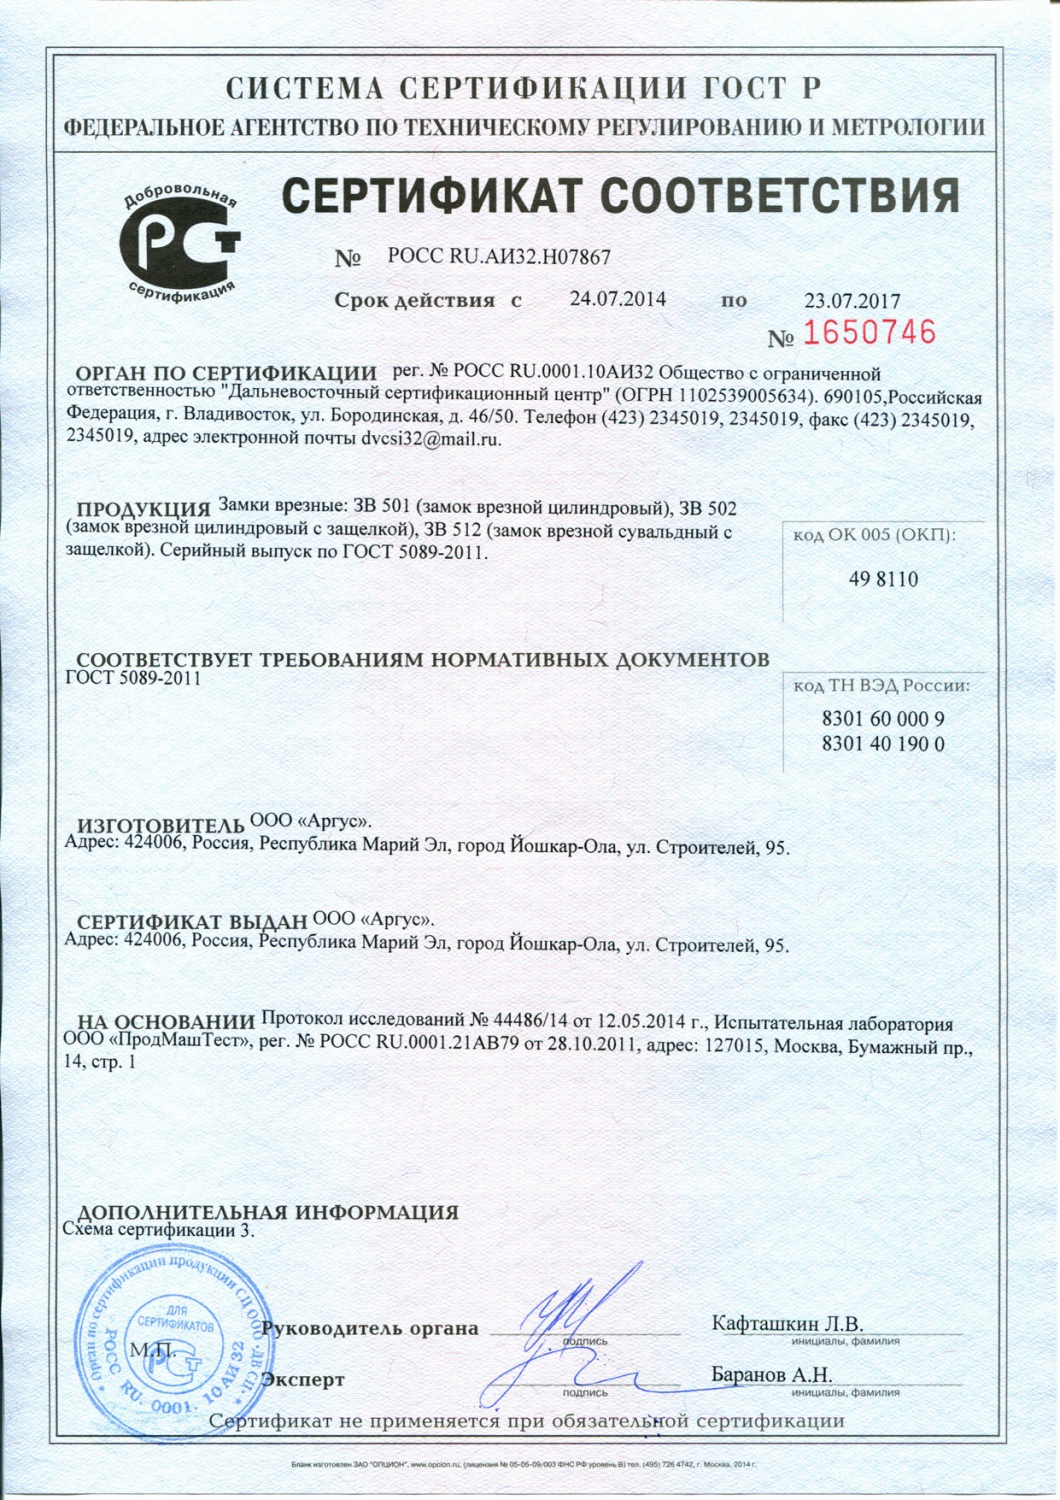 Сертификат соответствия (замки врезные ЗВ-501, ЗВ-512)